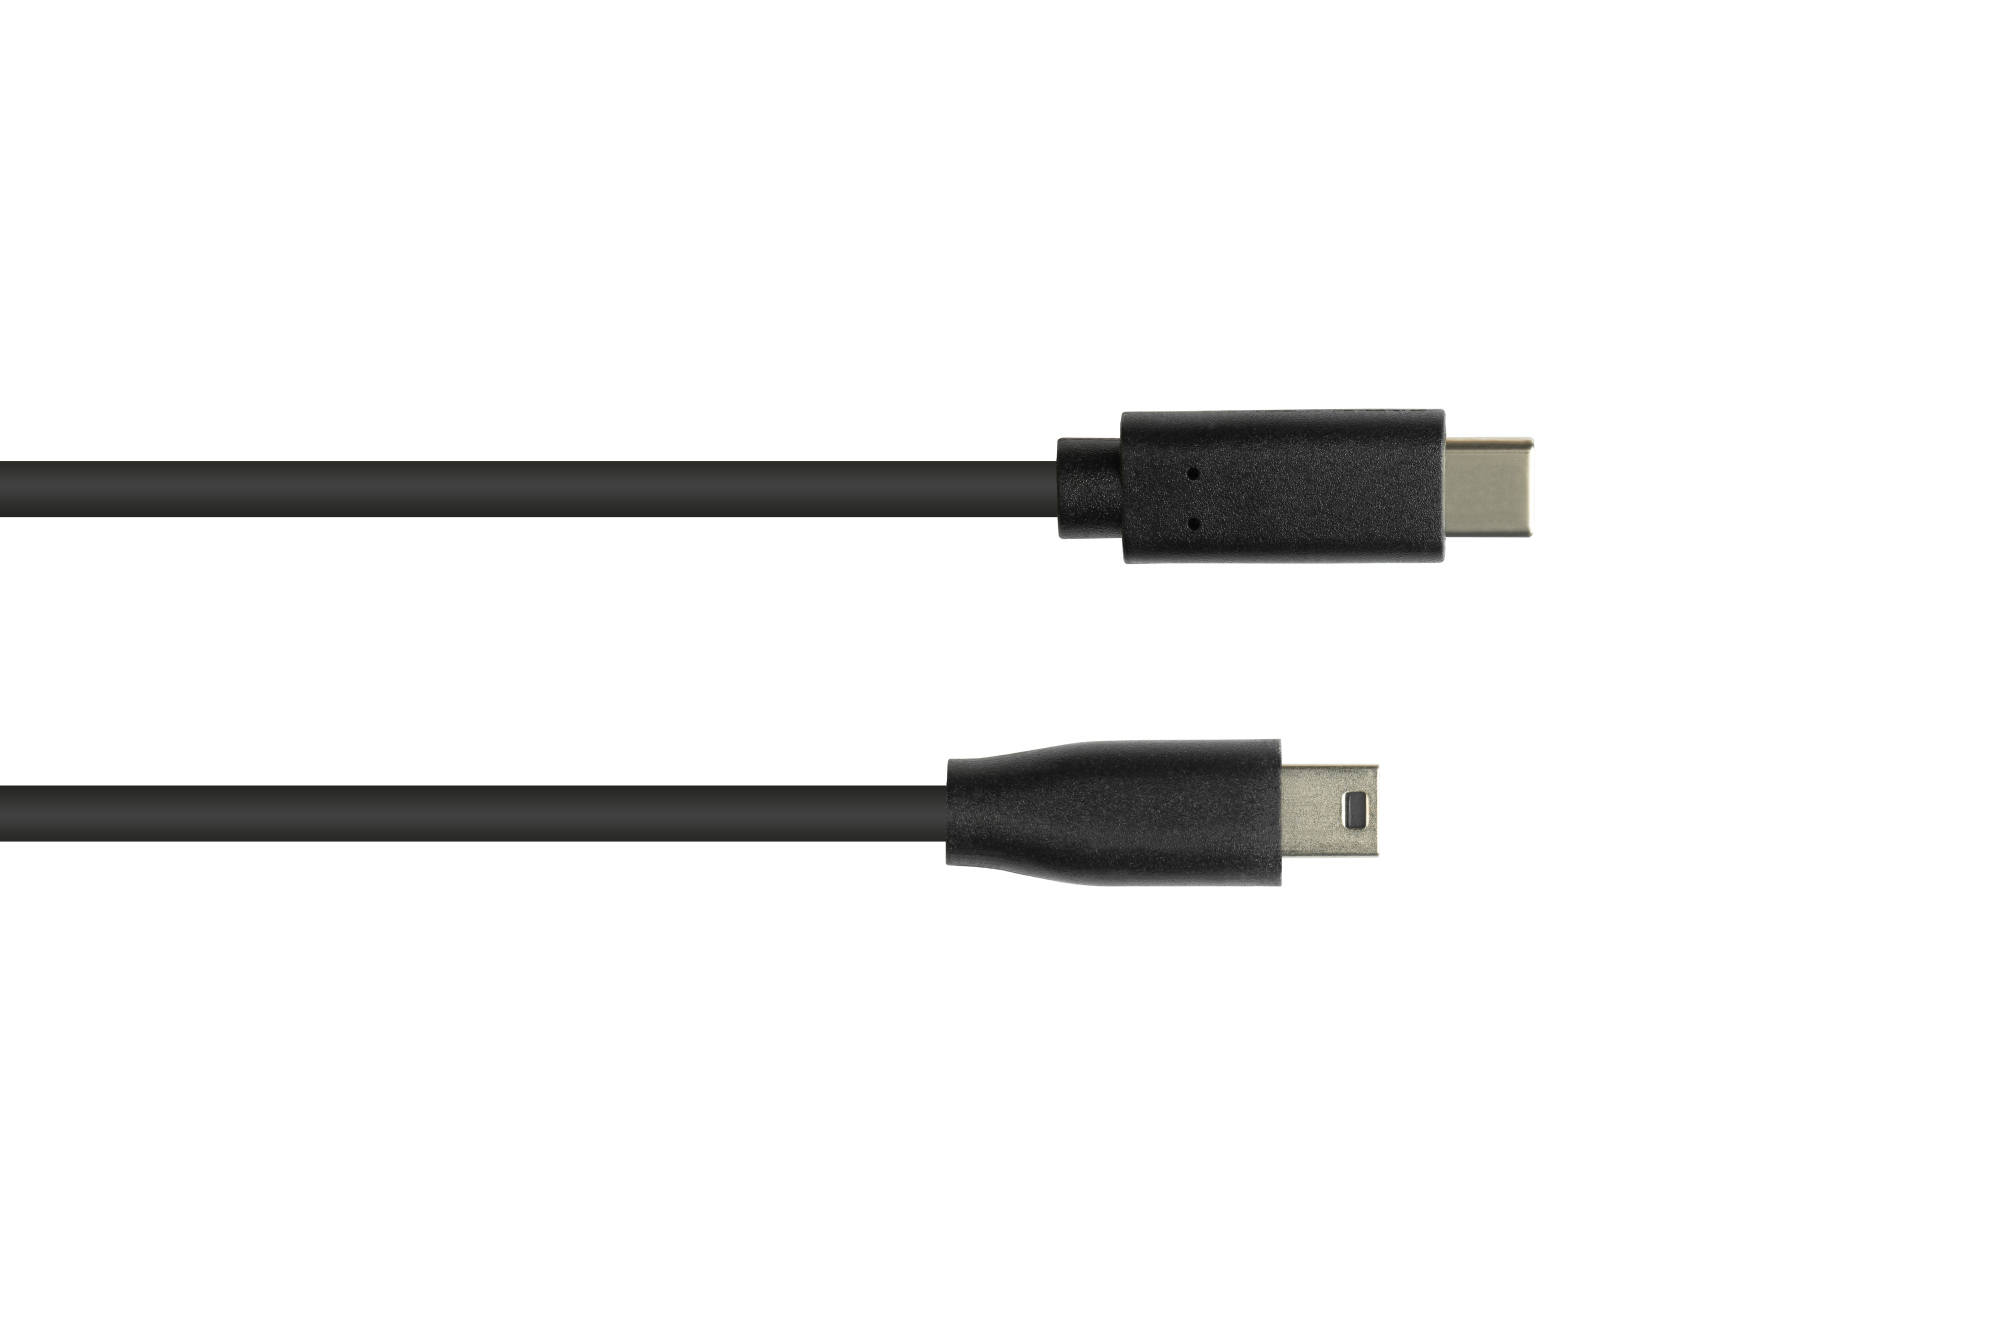 Anschlusskabel USB 2.0, USB-C™ Stecker an Stecker Mini B 5-pin, schwarz, 1m, Good Connections®